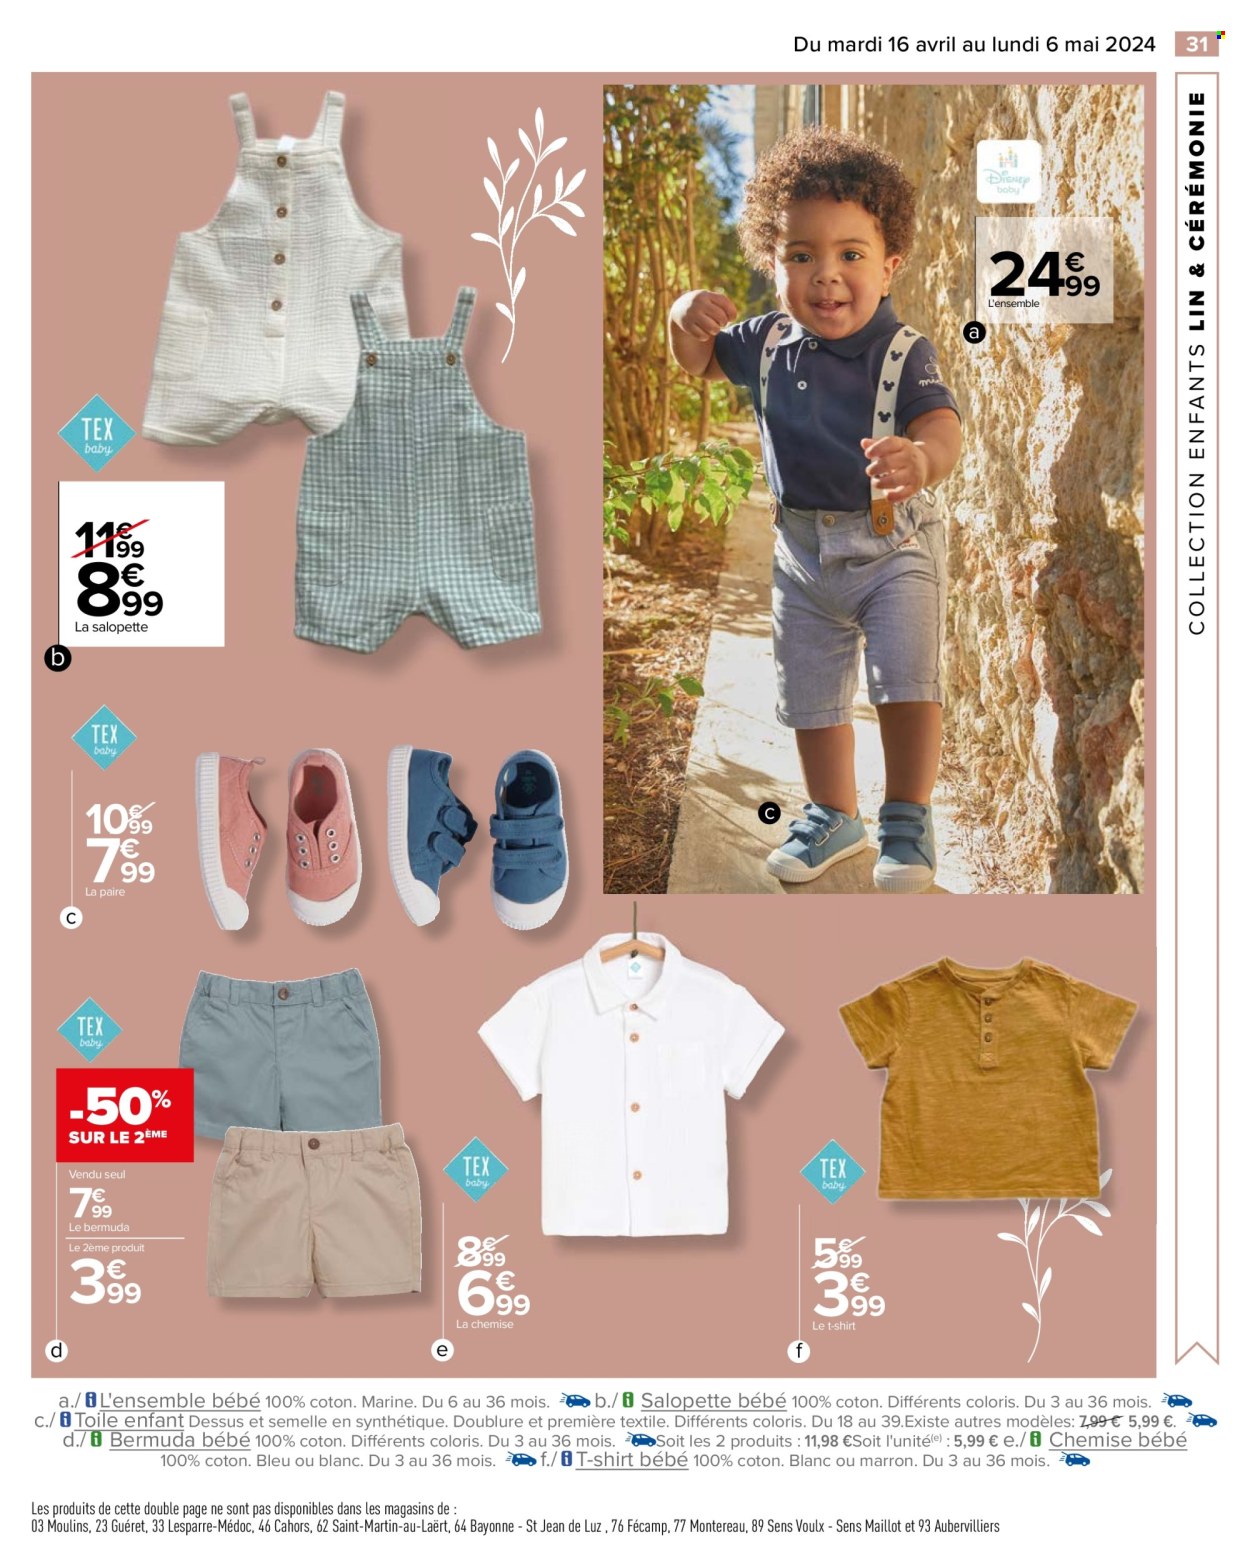 thumbnail - Catalogue Carrefour Hypermarchés - 16/04/2024 - 06/05/2024 - Produits soldés - Disney, ensemble bébé, chemise, t-shirt. Page 33.